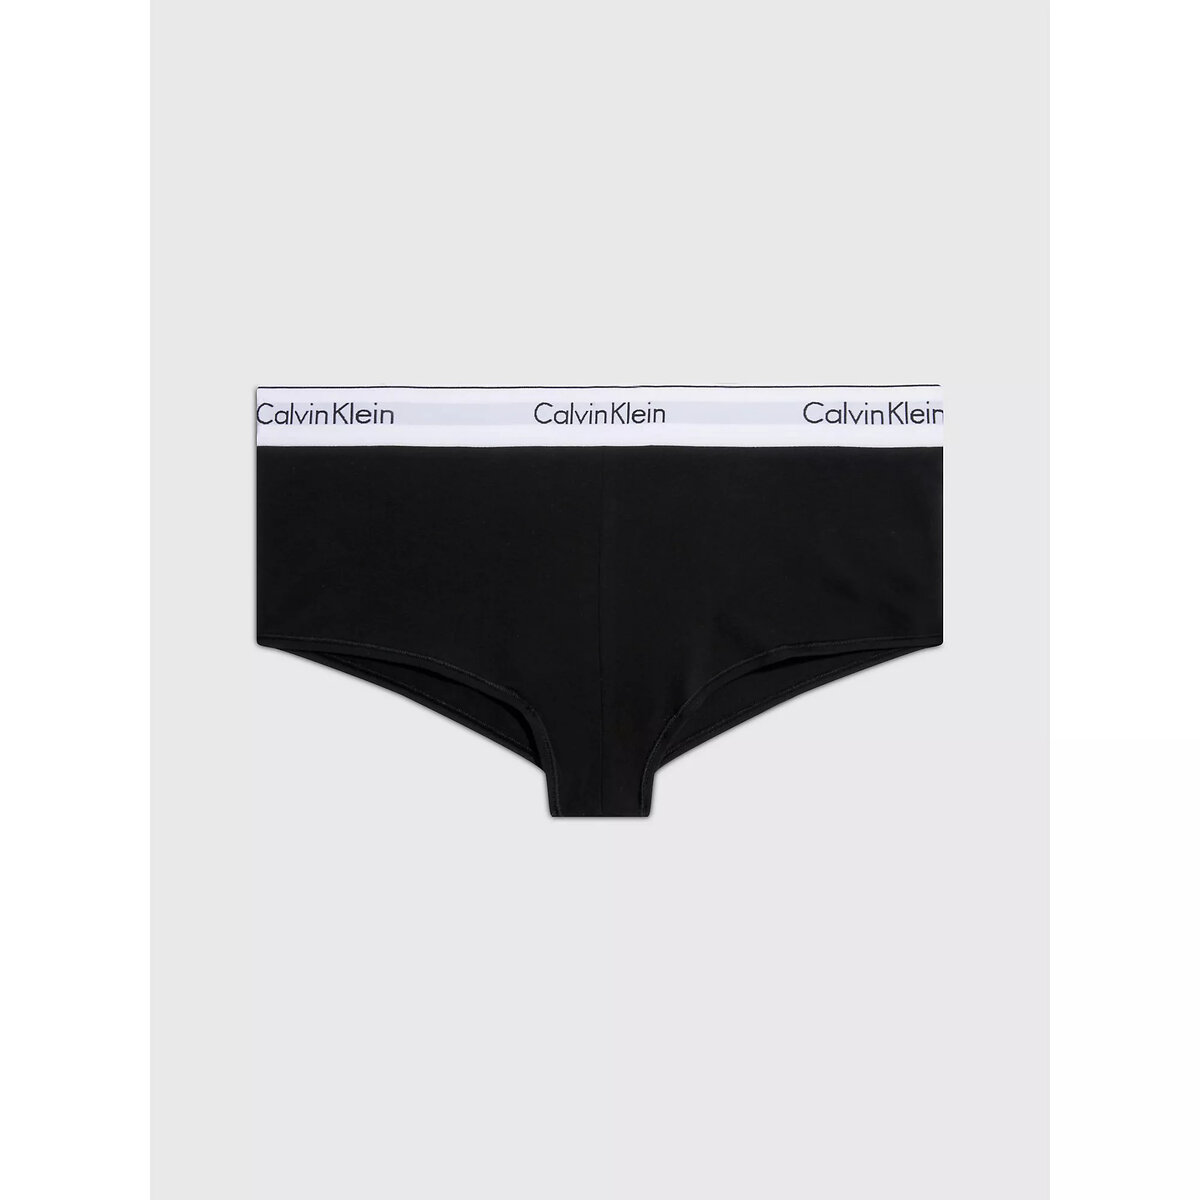 Ženské pohodlné kalhotky - Calvin Klein, L i652_0000F3788E001001